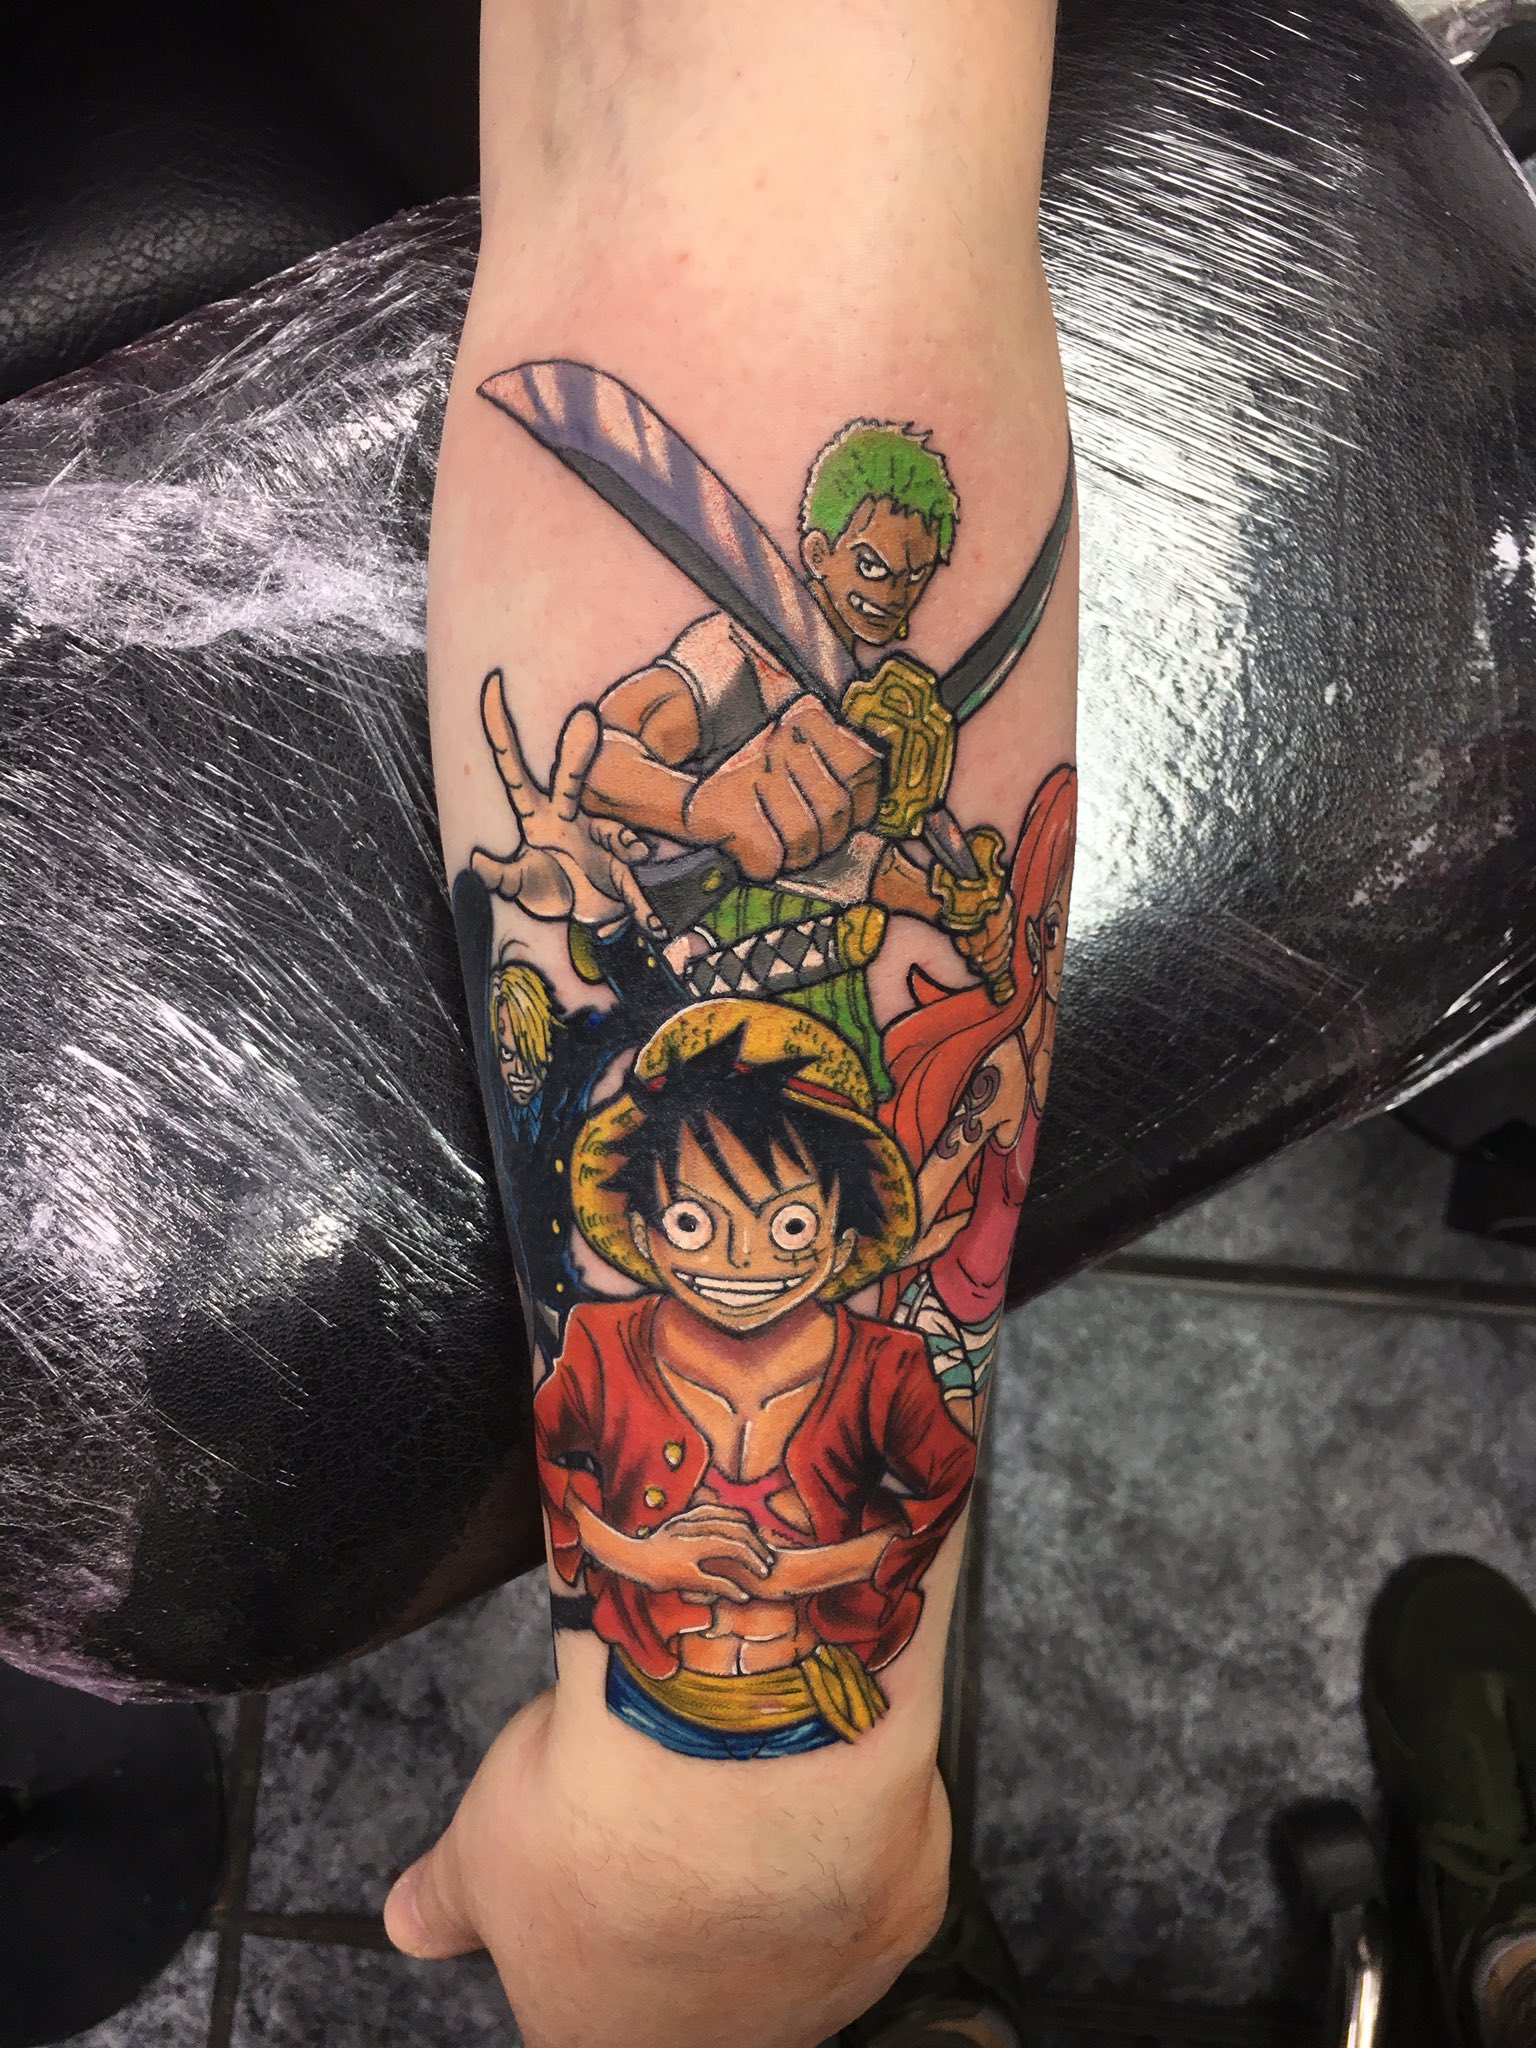 Tattoo One Piece Zoro.